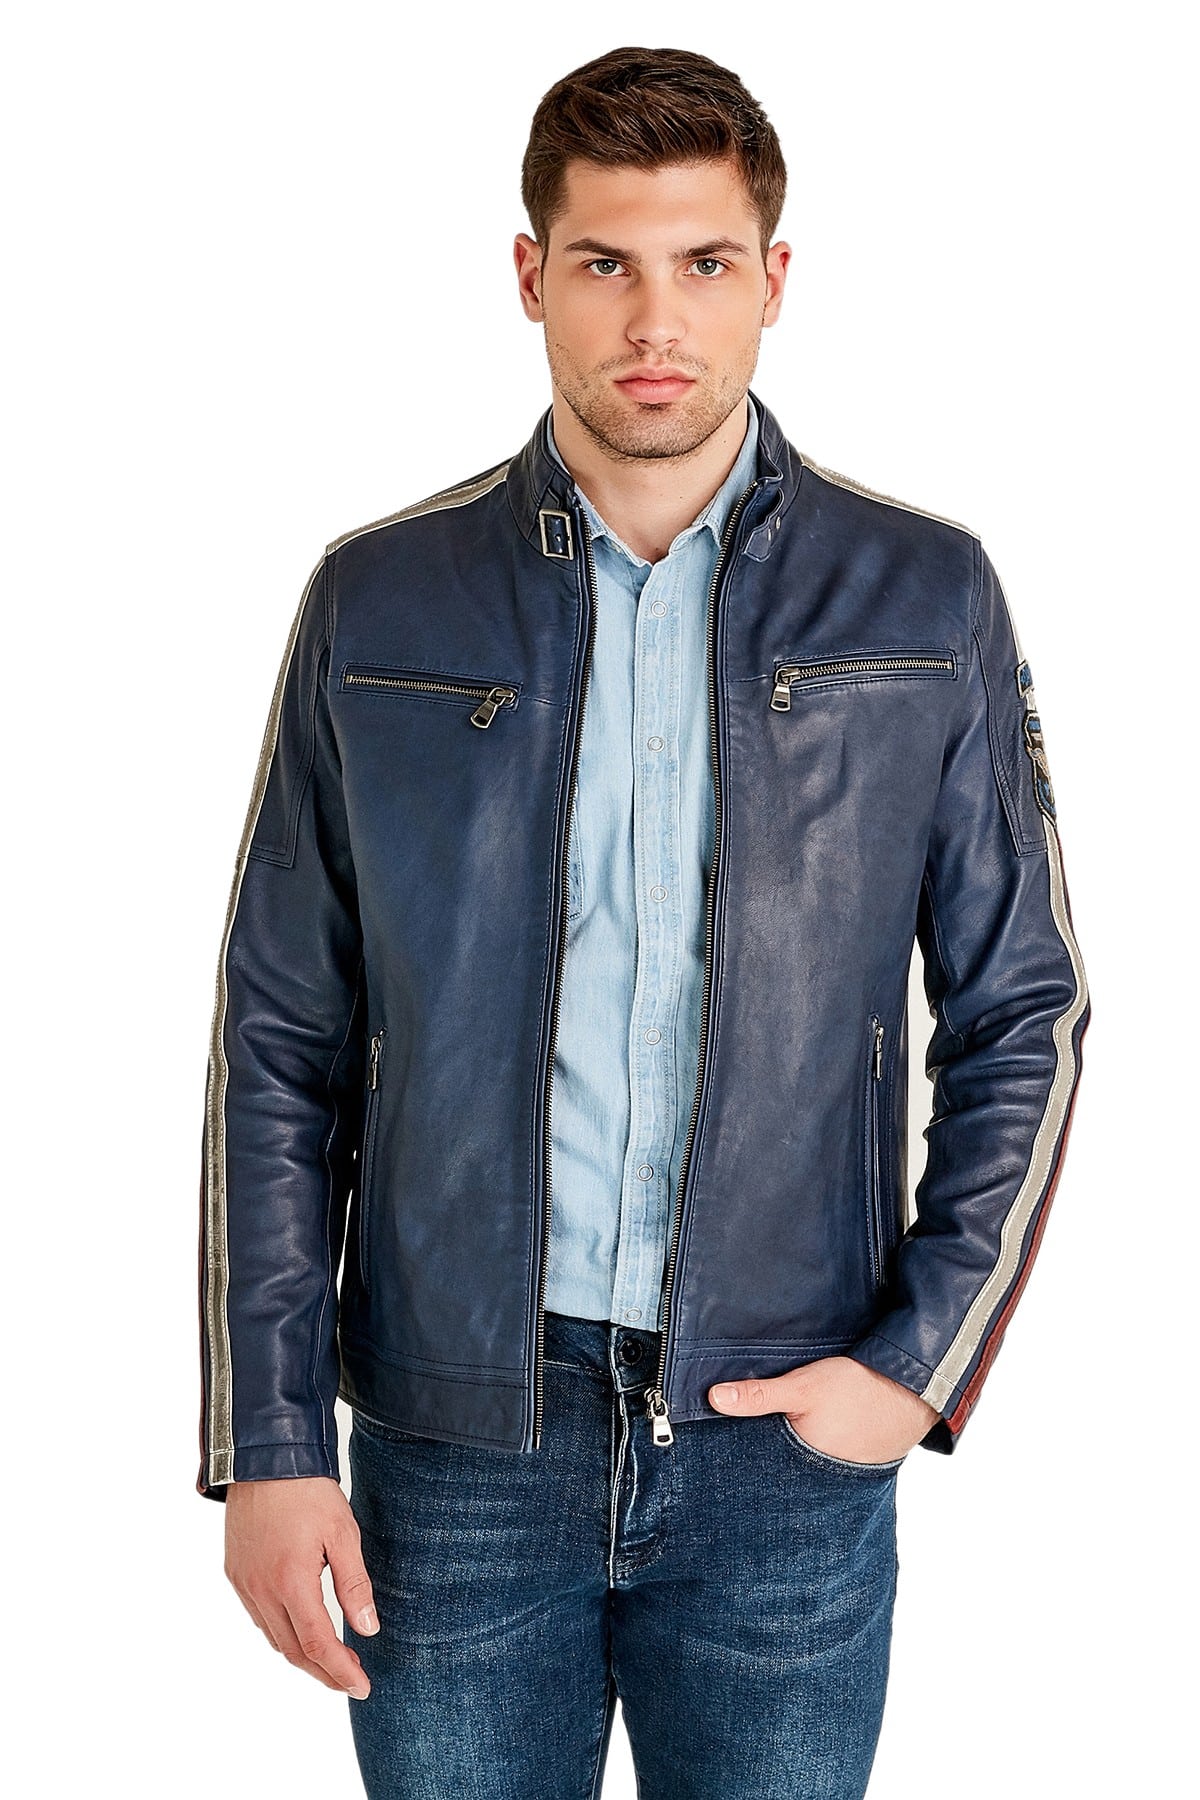 Mens Blue Motorcylce Leather Jacket - Stylish Motorcycle Fashion Jacket